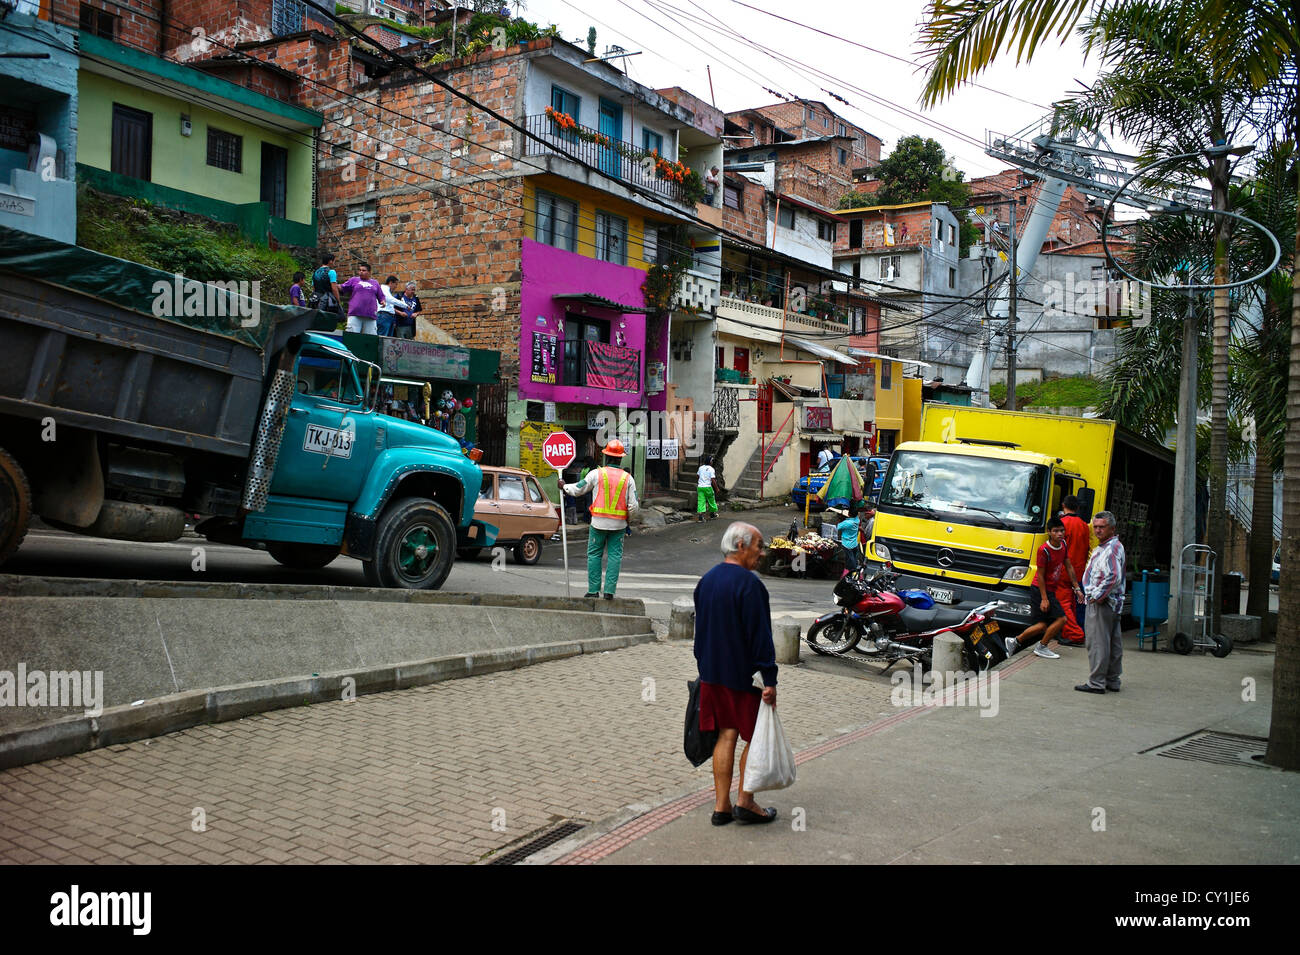 The hillside community of Santo Domingo in Medellin, also known as Comunas. Stock Photo